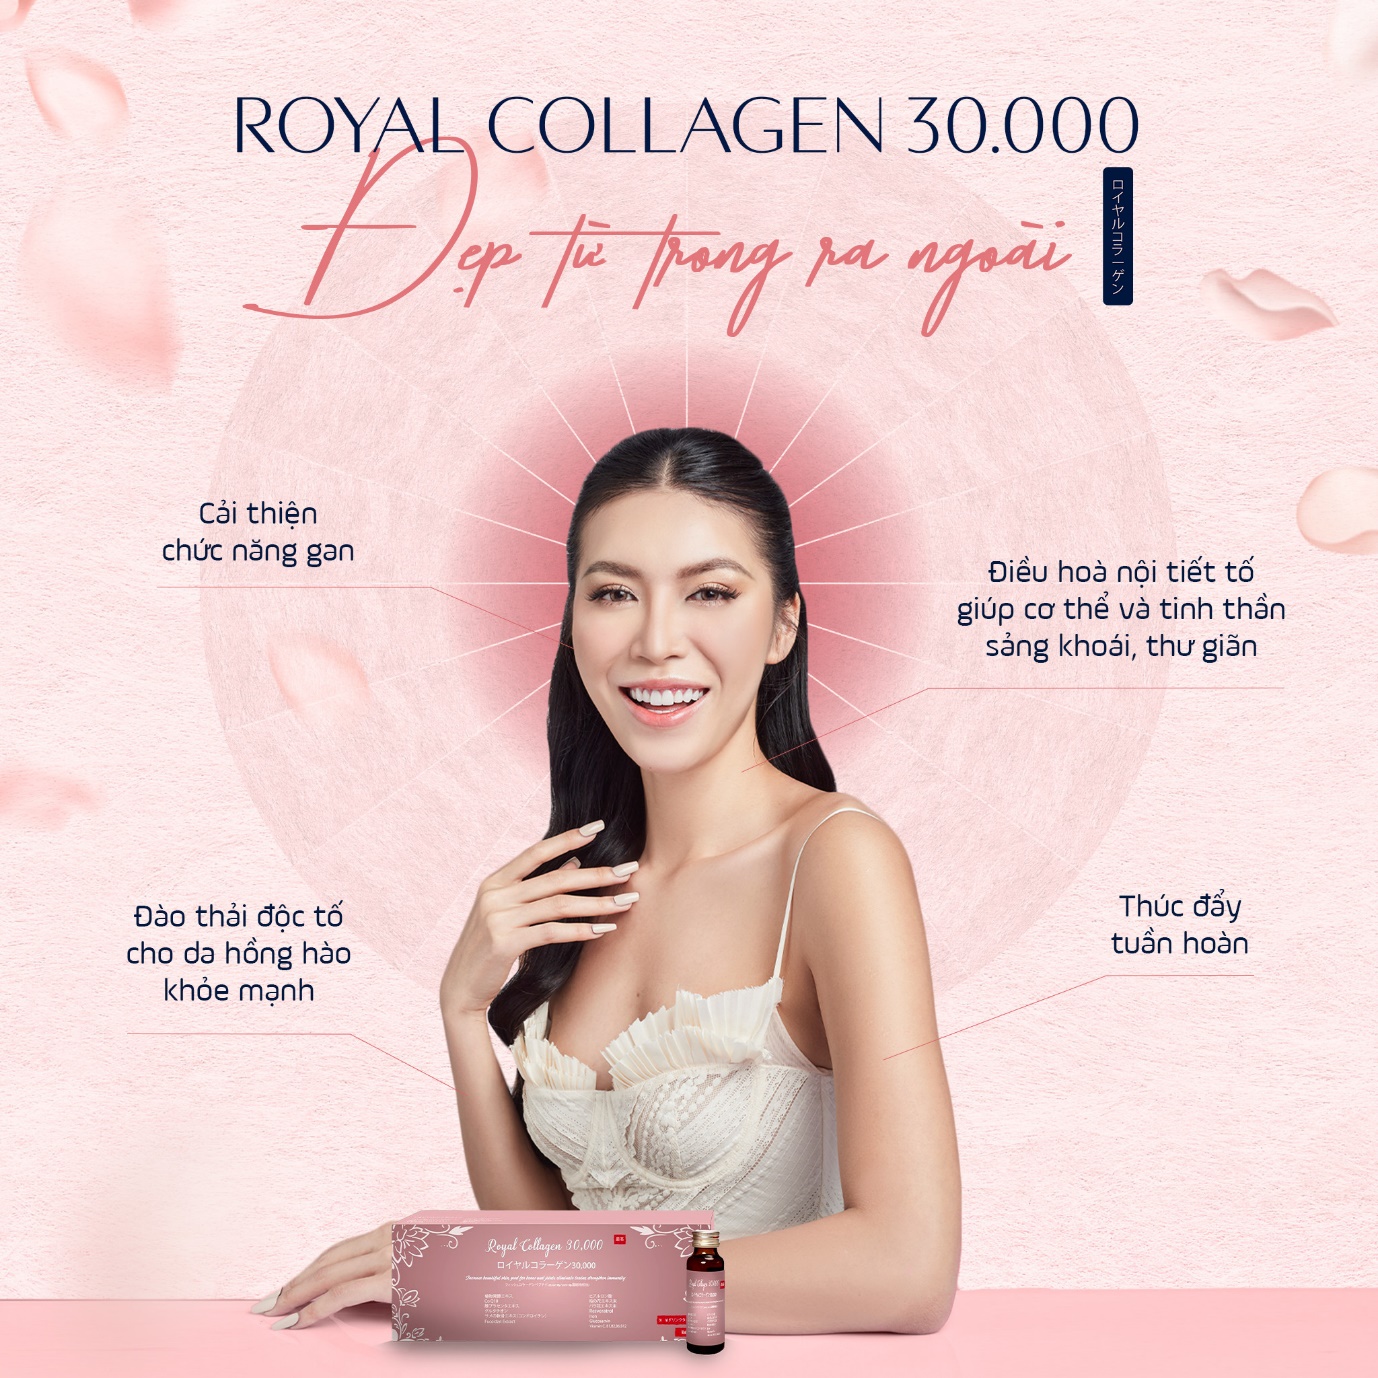 Phái đẹp tò mò về sự vượt trội của công nghệ collagen của Royal collagen 30.000 - 4